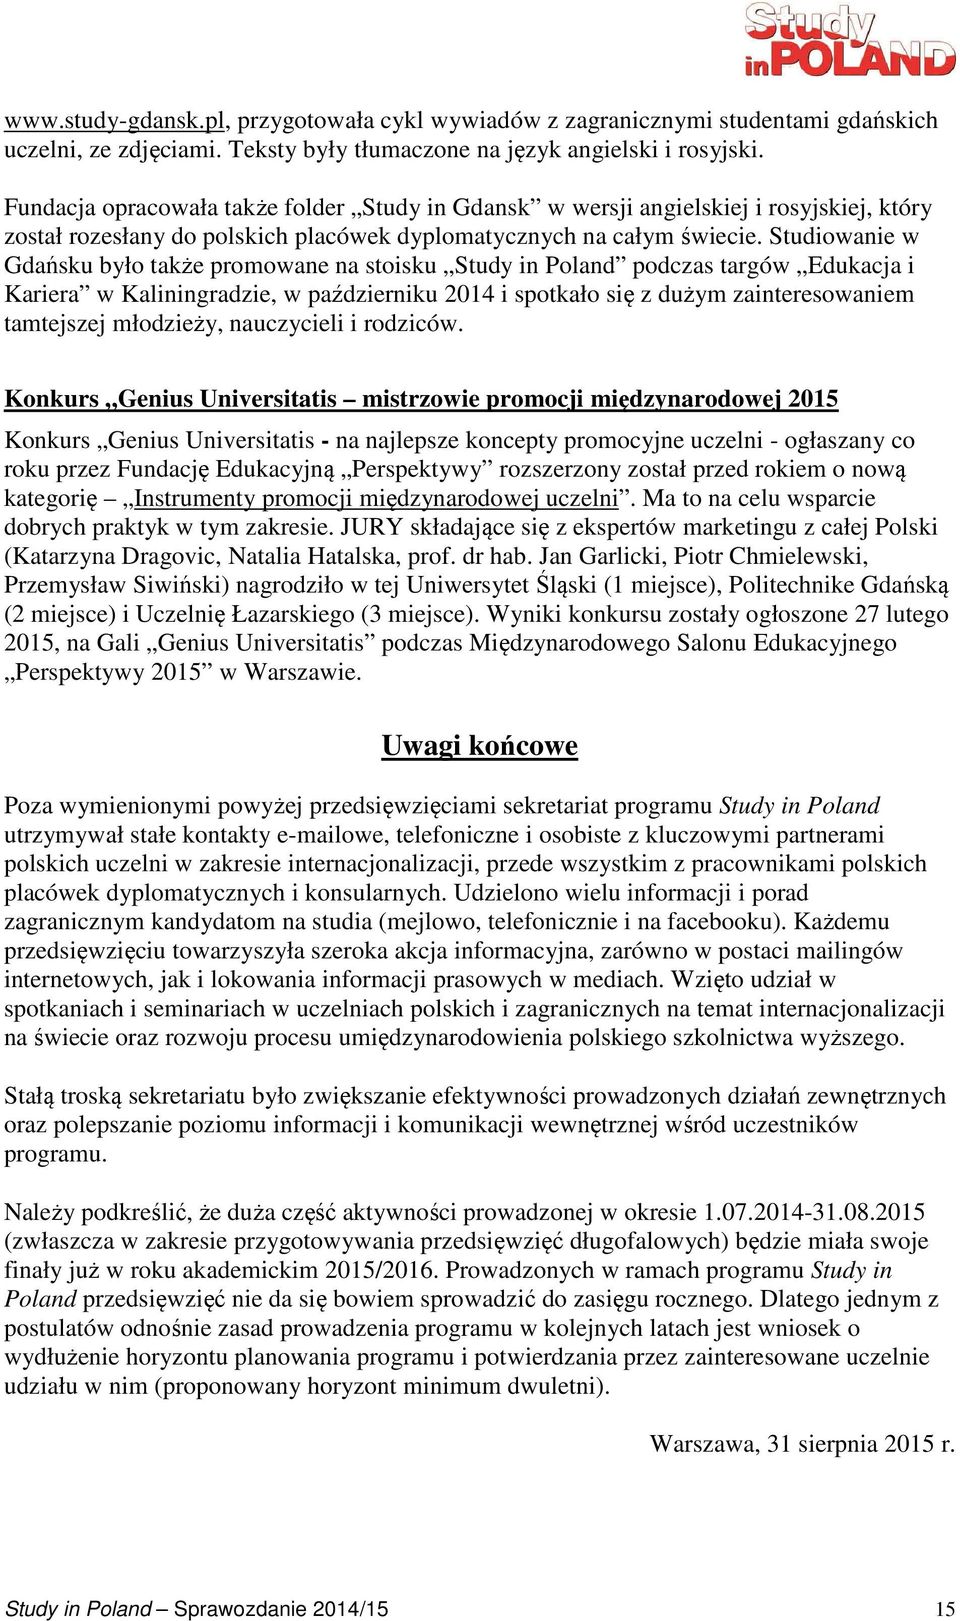 Studiowanie w Gdańsku było także promowane na stoisku Study in Poland podczas targów Edukacja i Kariera w Kaliningradzie, w październiku 2014 i spotkało się z dużym zainteresowaniem tamtejszej